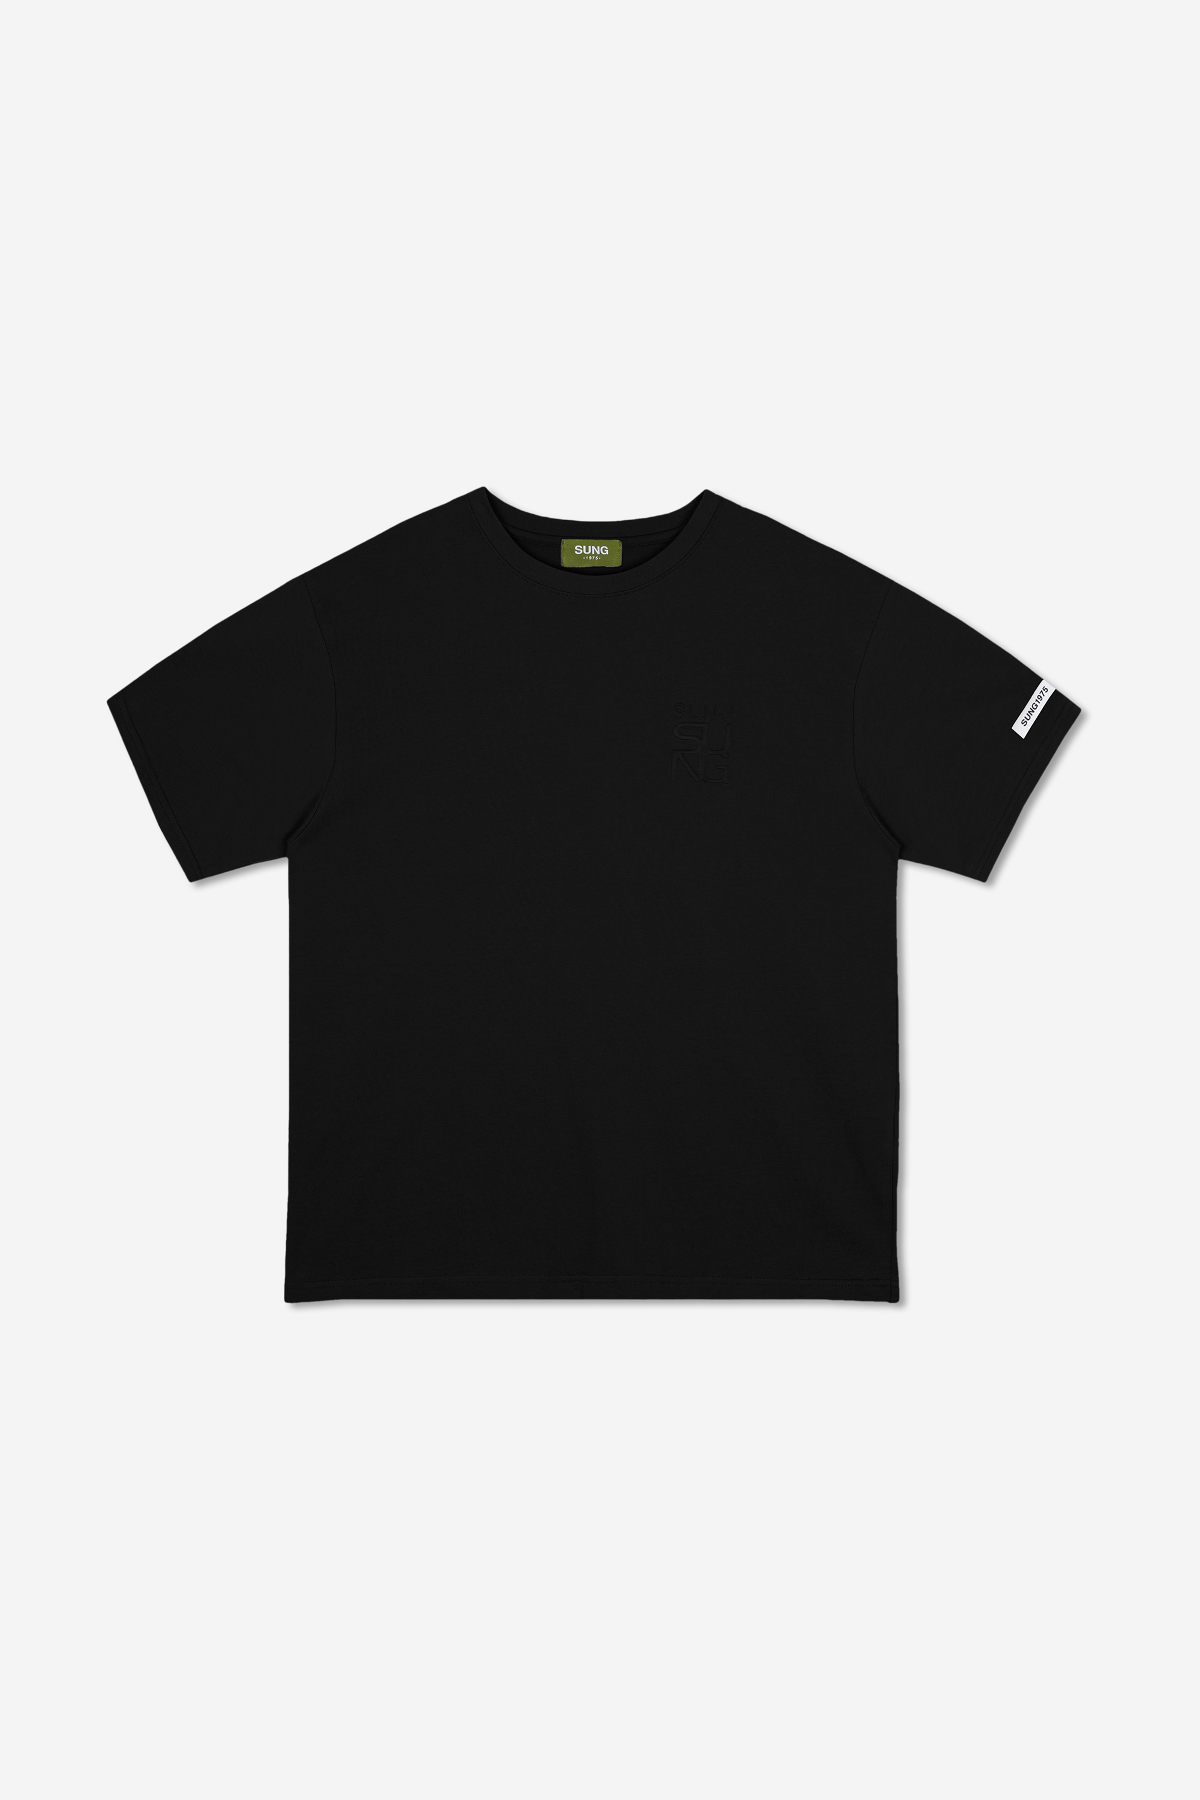 엠보스 로고 티셔츠(SUNG-TS-06)